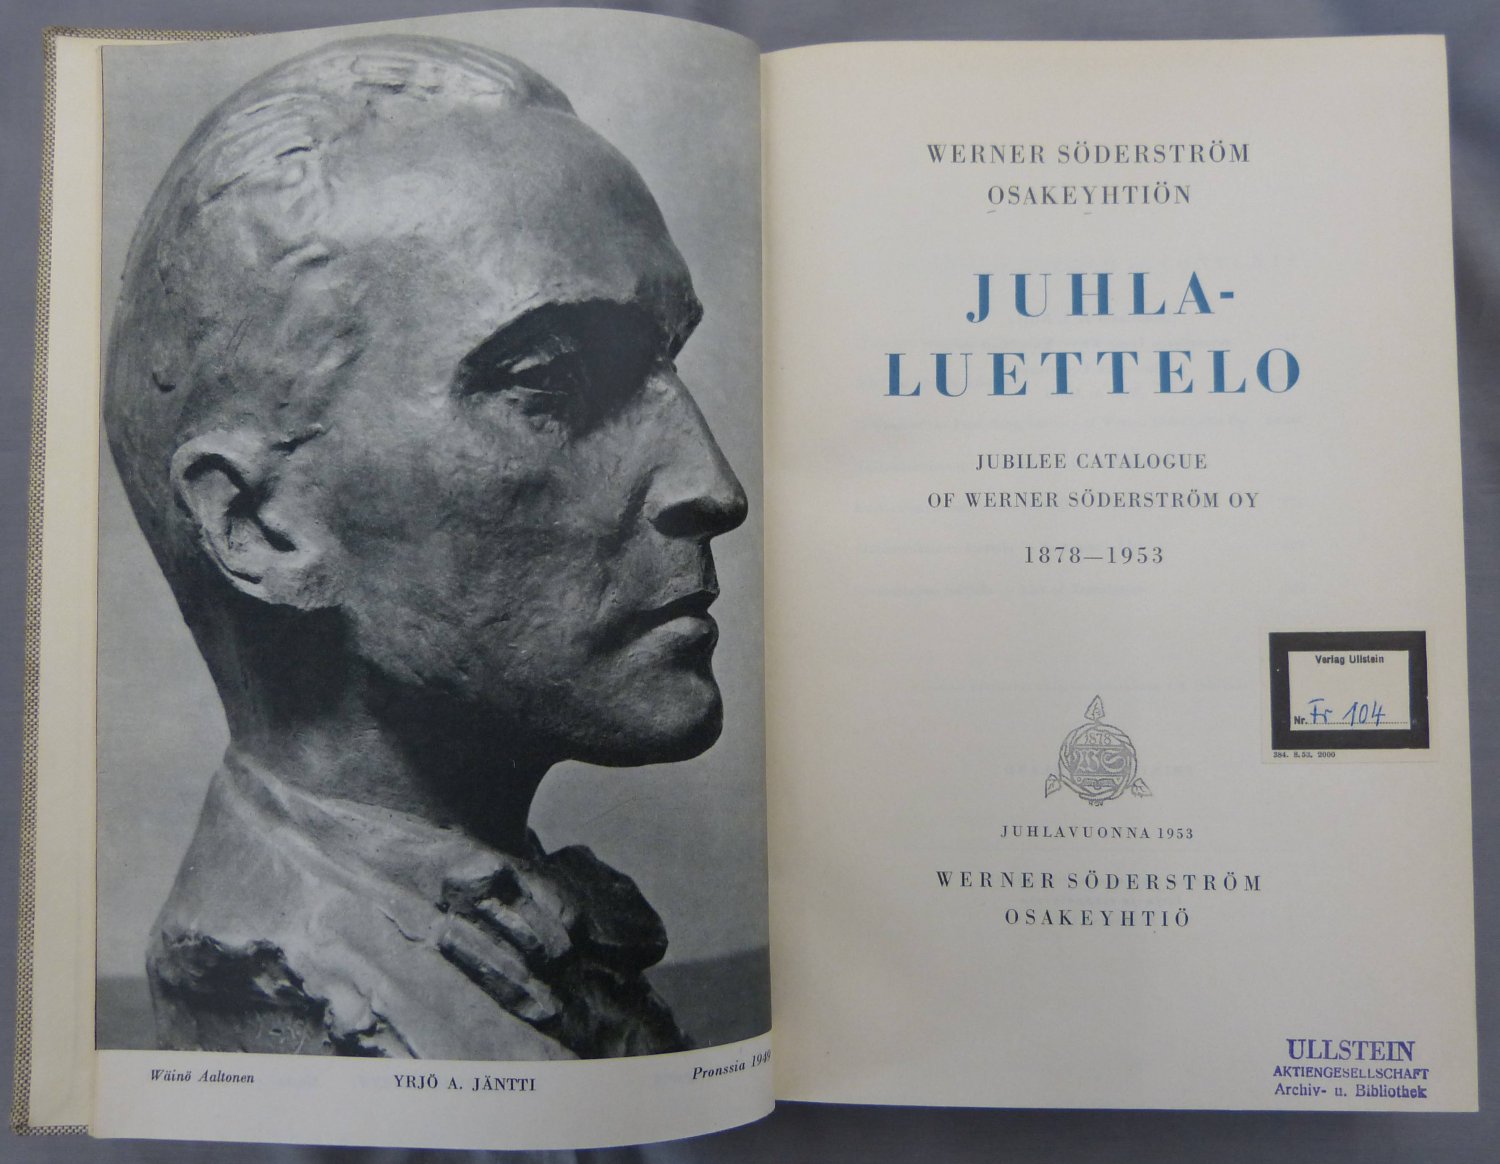 Werner Söderström Osakeyhtiön (Editor):  Juhlaluettelo. Jubilee Catalogue of Werner Söderström oy 1878-1953. 